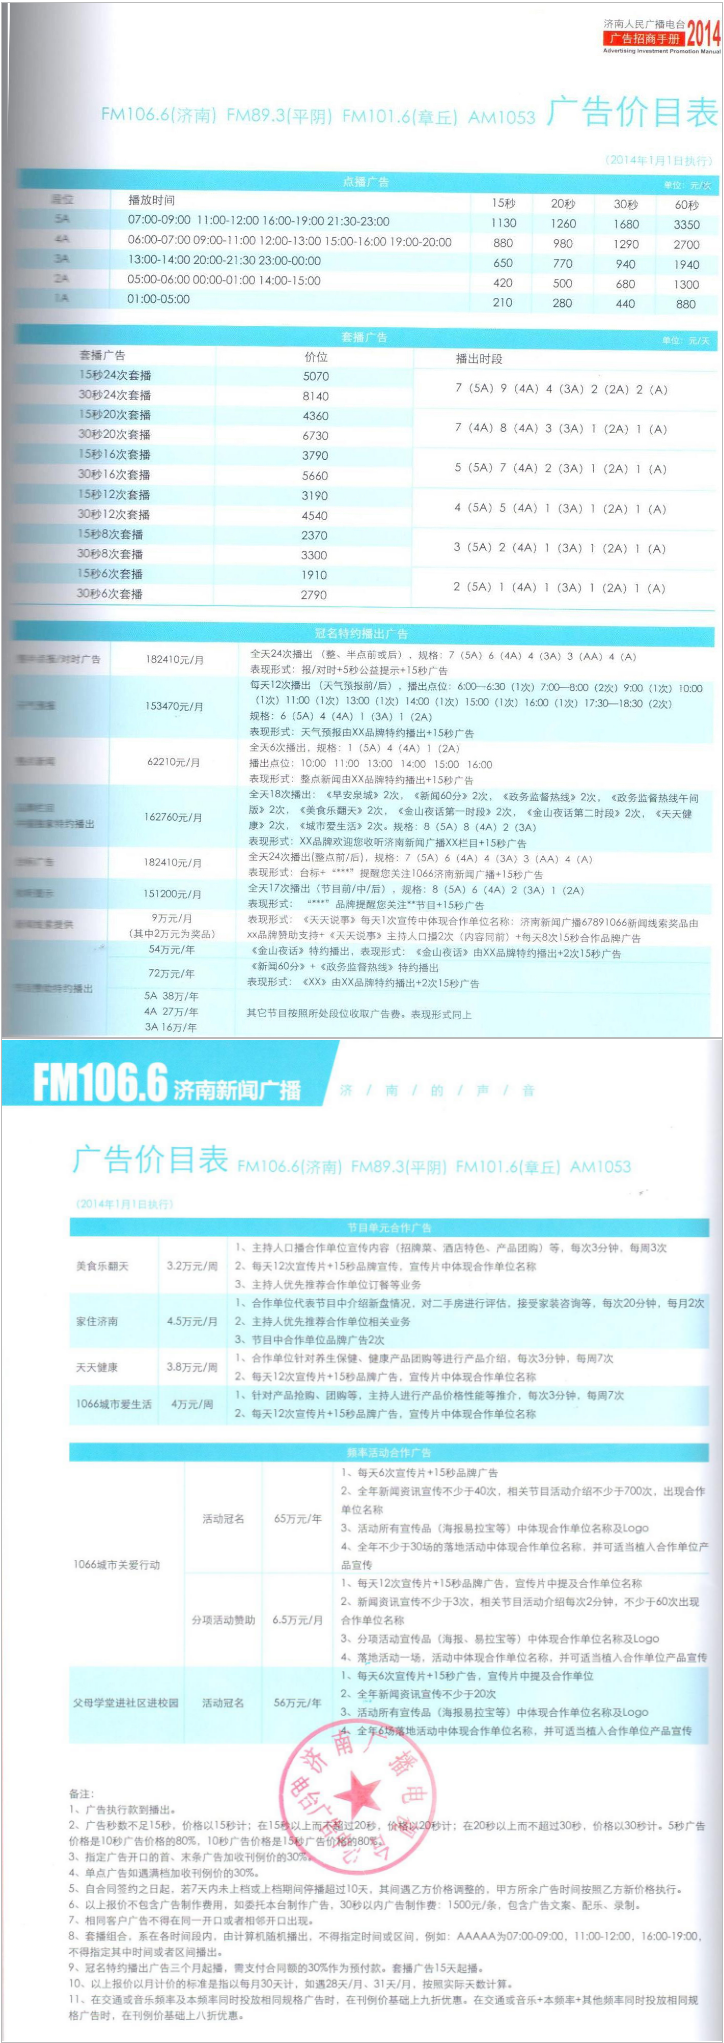 2014济南人民广播电台新闻广播FM106.6 AM1053广告报价表.png